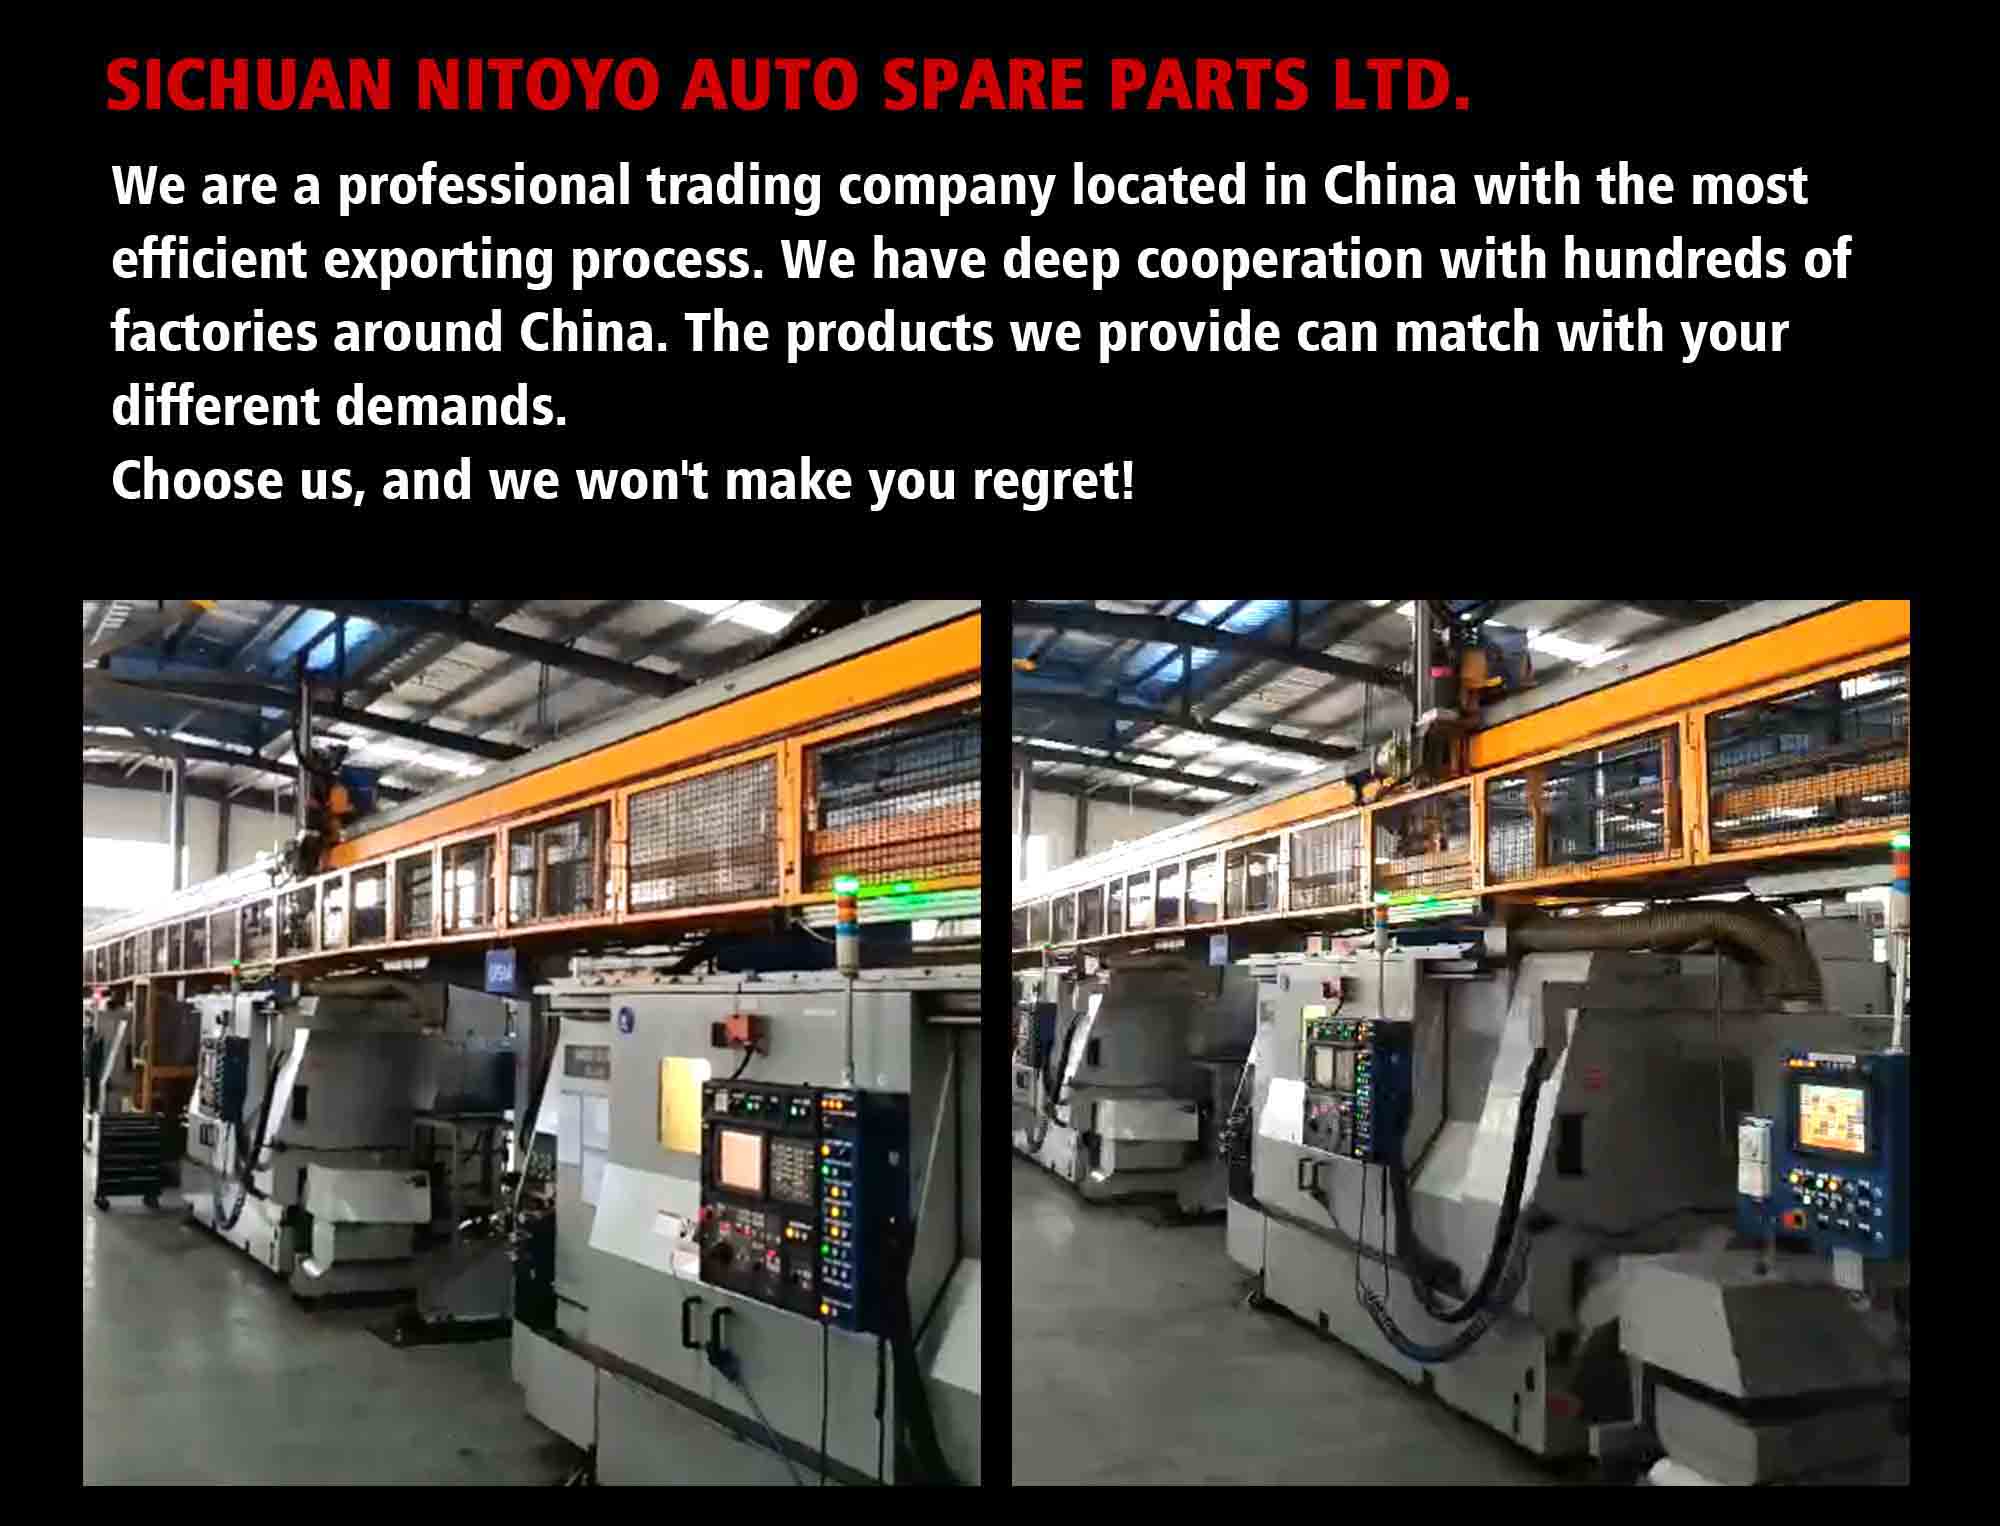 NITOYO Engine Crankshafts For Sale Used for NIssan Z24 Crankshafts